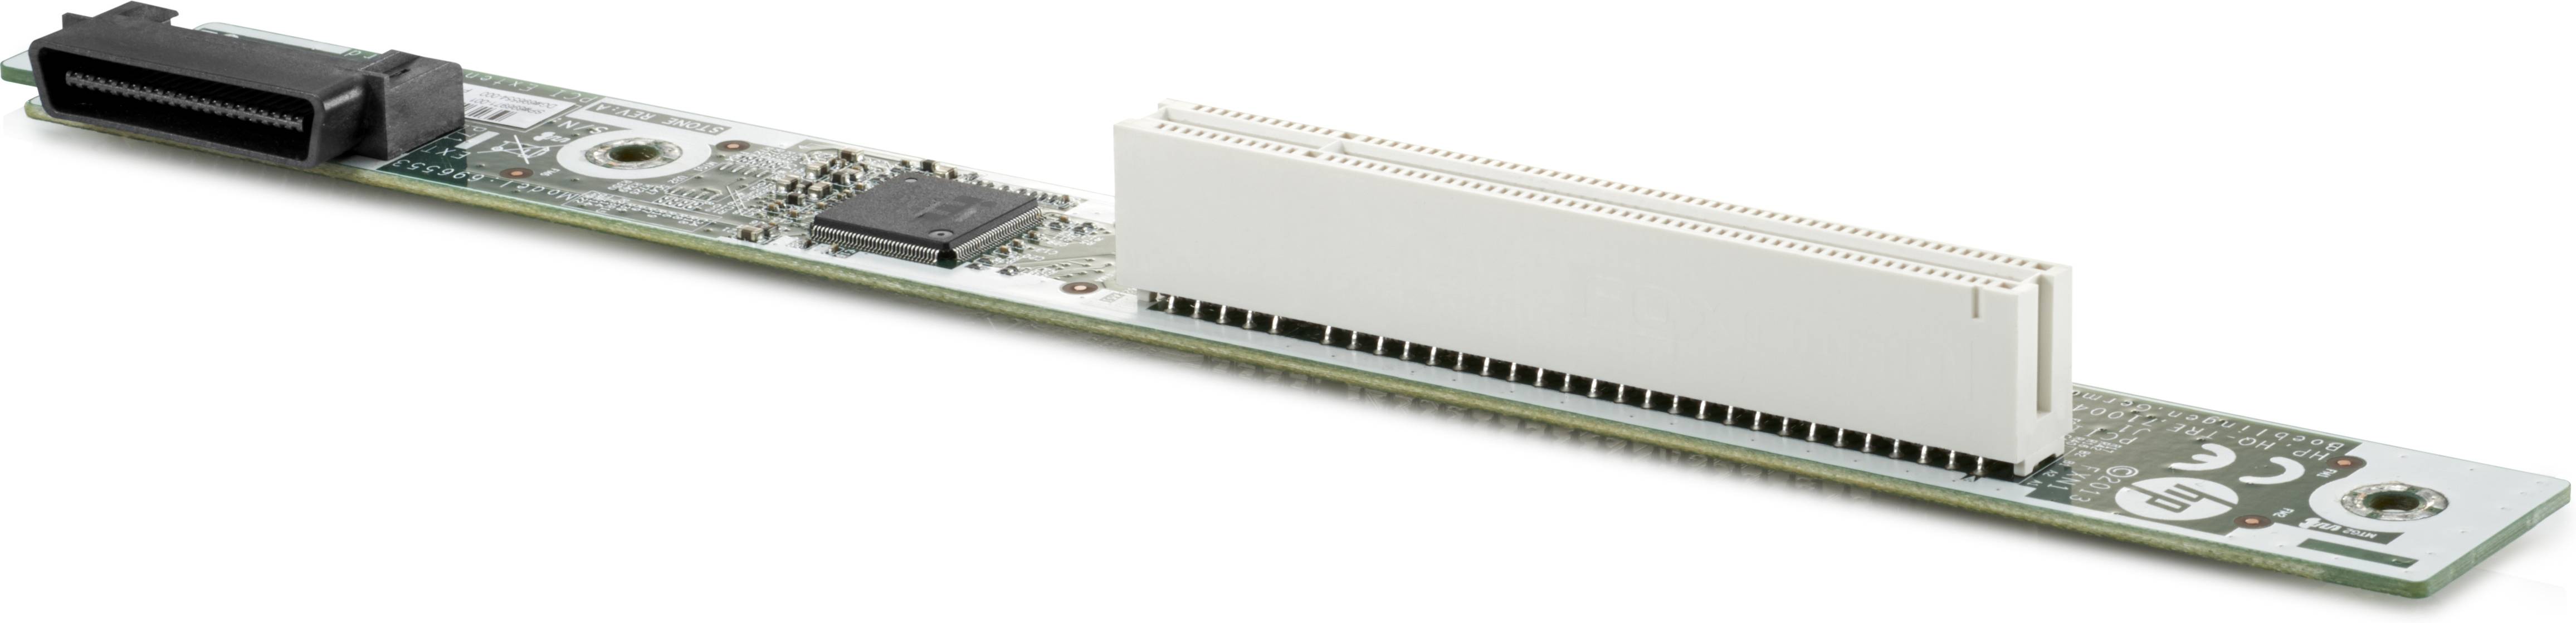 Rca Informatique - Image du produit : HP LEGACY PCI EXPANSION SLOT F/ DEDICATE WORKSTATION